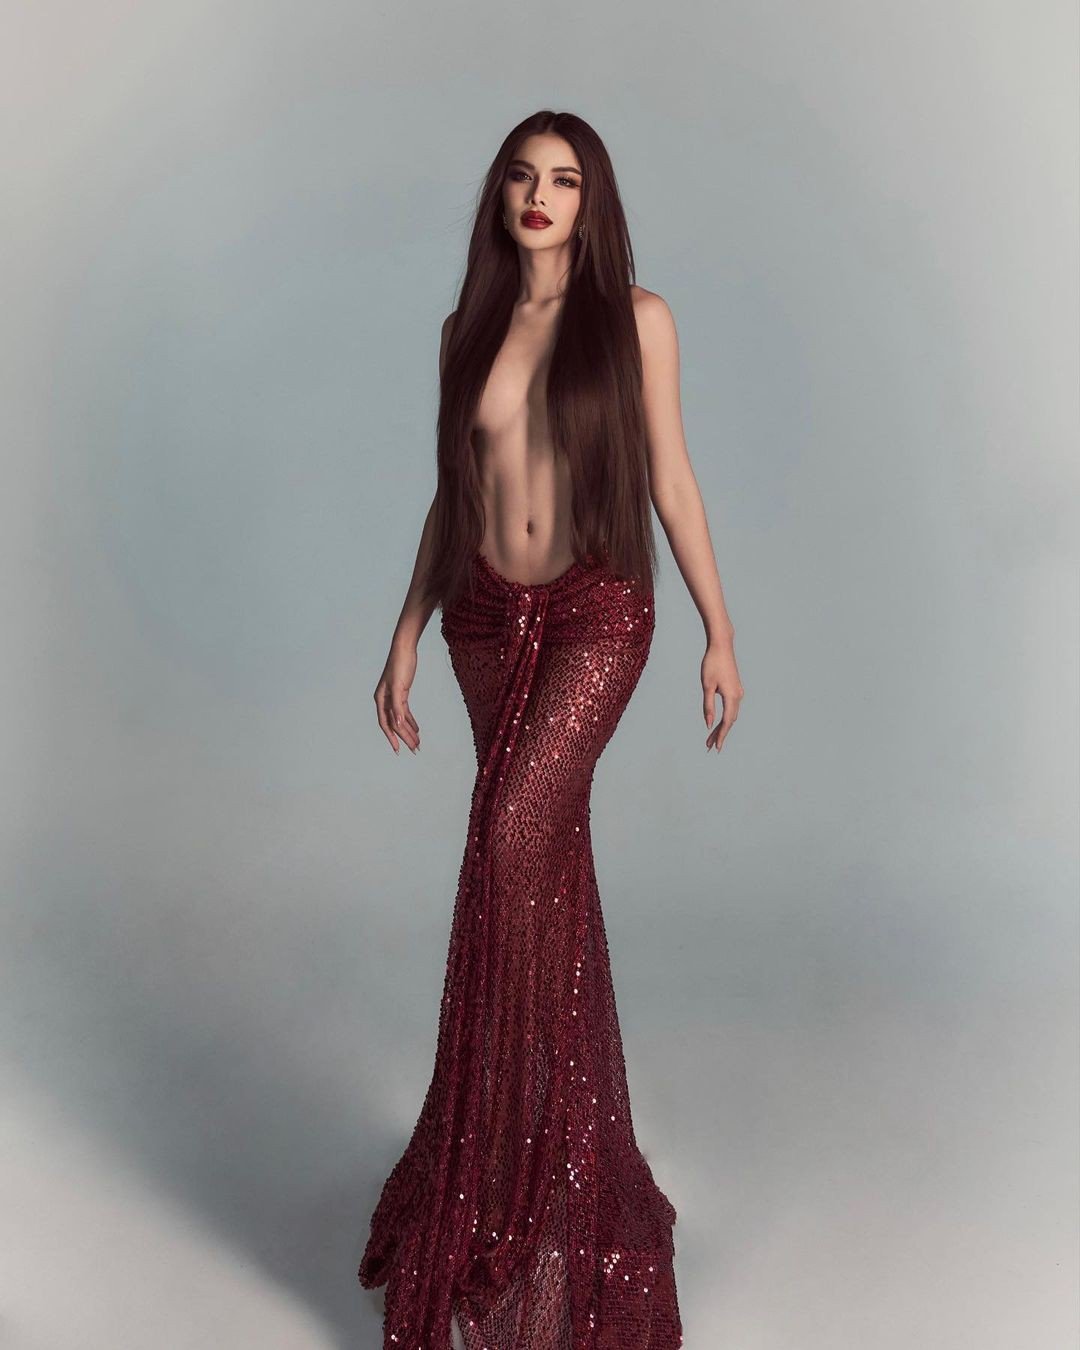 Hoa hậu Hòa bình Thái Lan gây tranh cãi vì chụp ảnh bán khỏa thân - 3